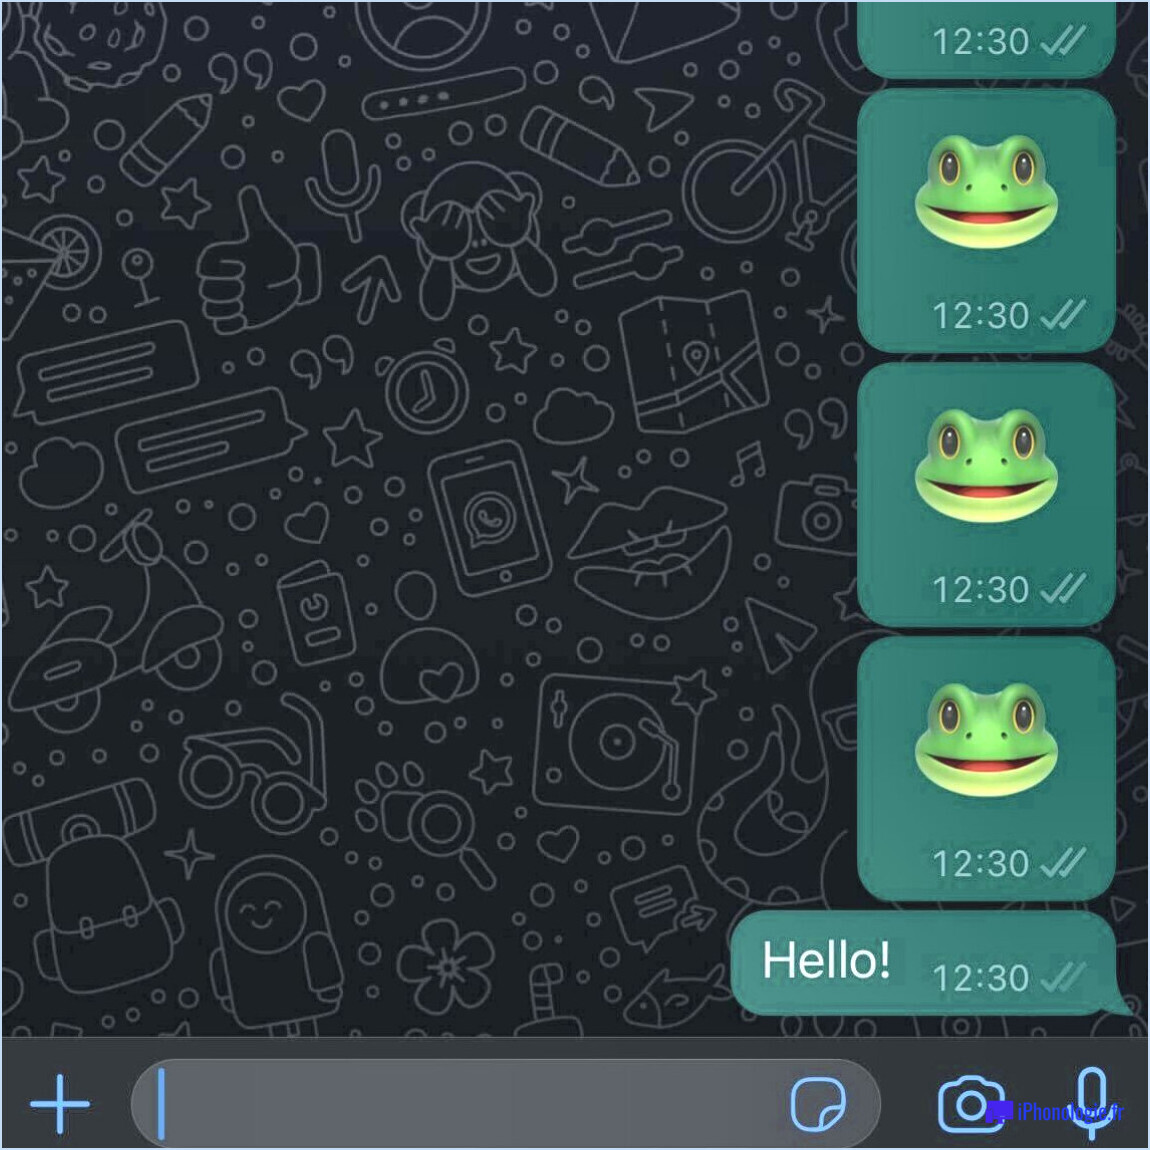 Comment répondre à un message de bienvenue sur un groupe whatsapp?